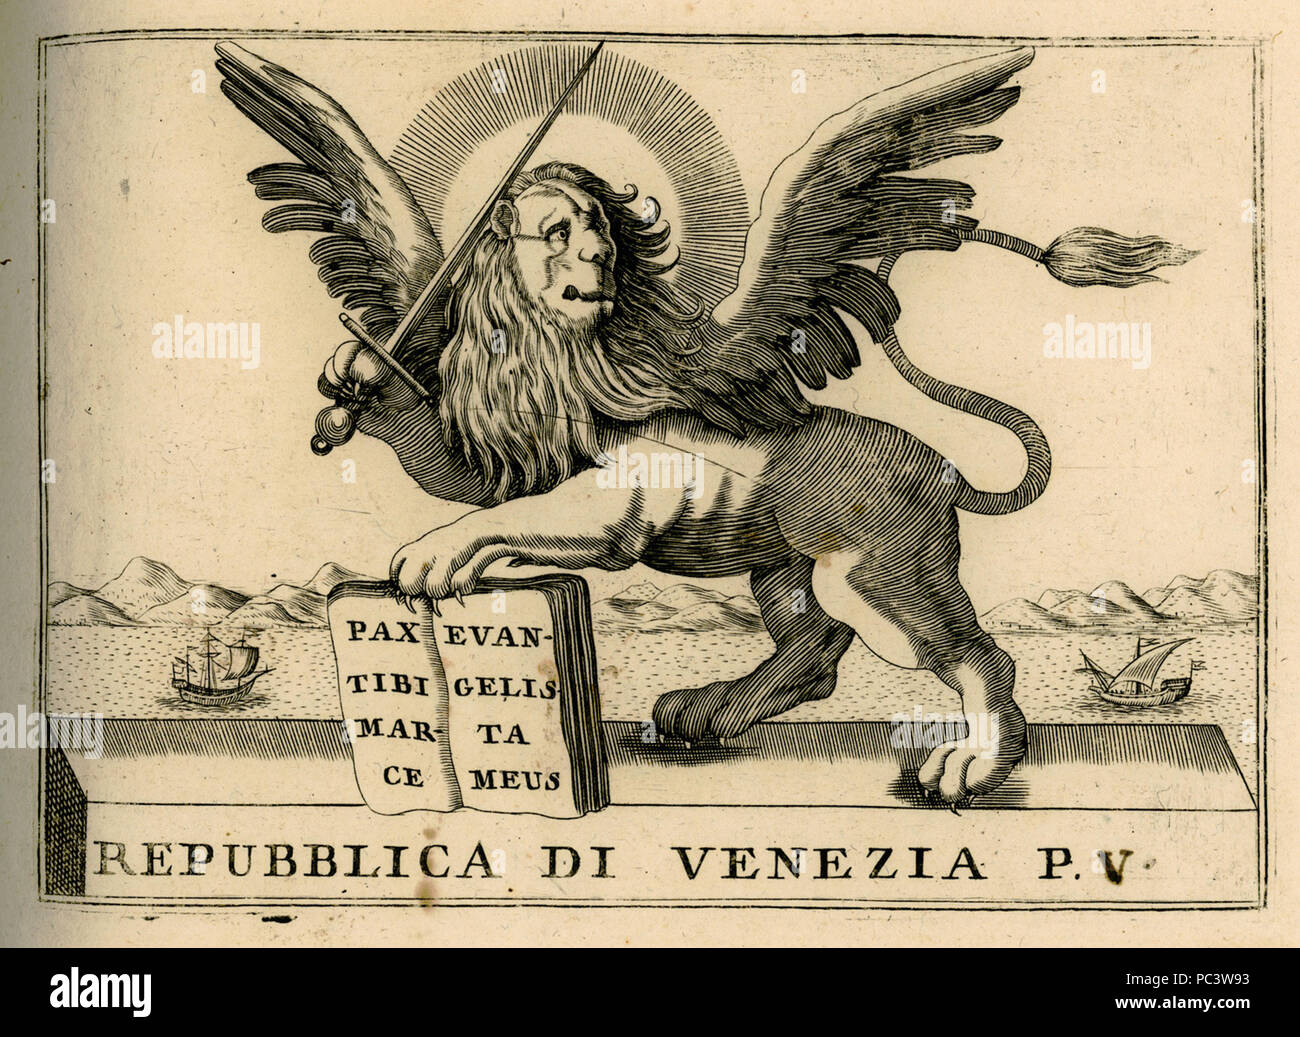 517 Repubblica di Venezia p V - Coronelli Vincenzo - 1688 Stock Photo